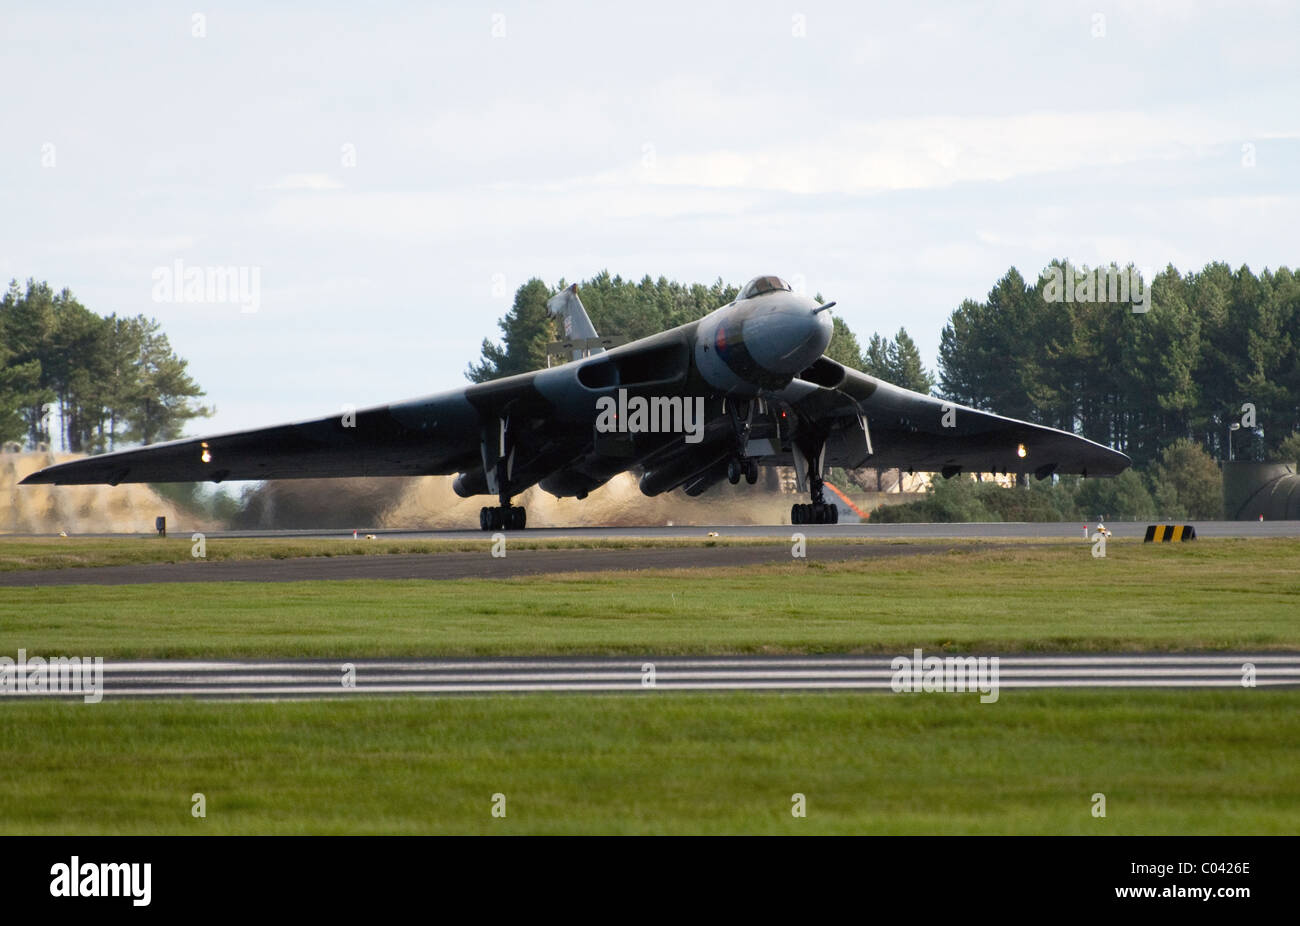 L'atterrissage de l'avion Avro Vulcan à raf leuchars airshow ecosse septembre 2010 Banque D'Images